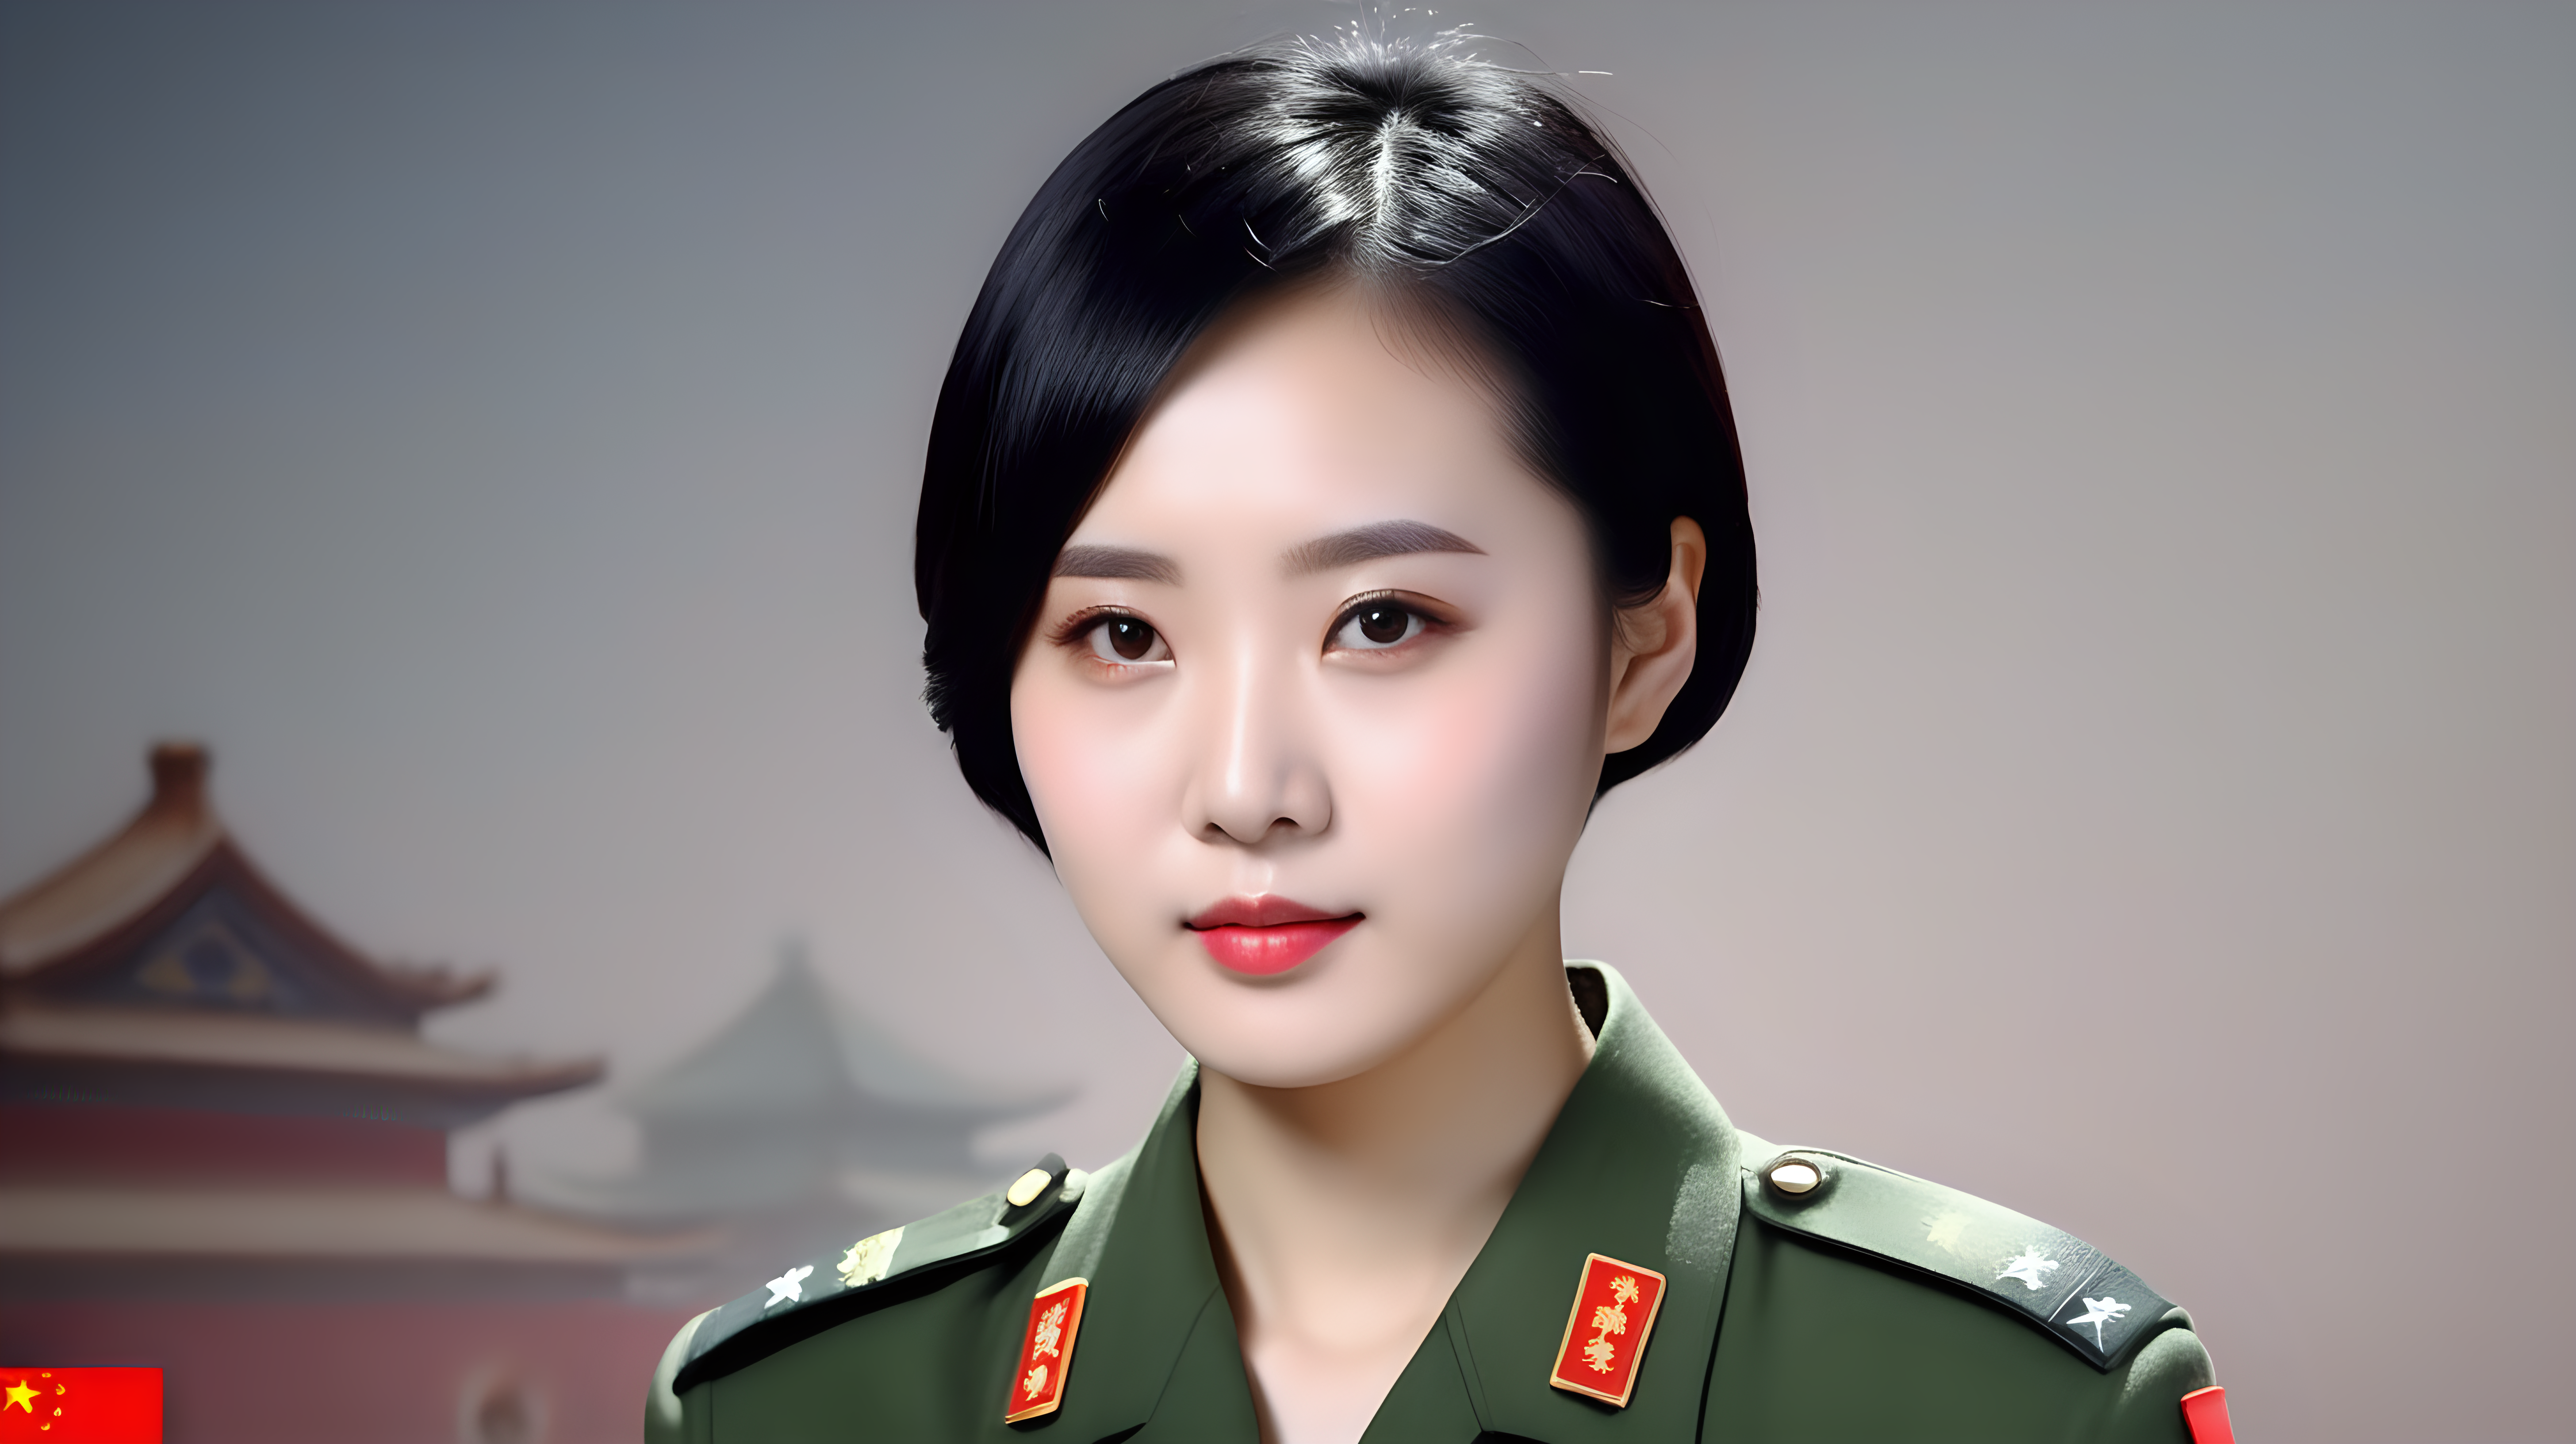 一名中国人民解放军女兵
青年人
黑发
短发
主持电视节目
正脸